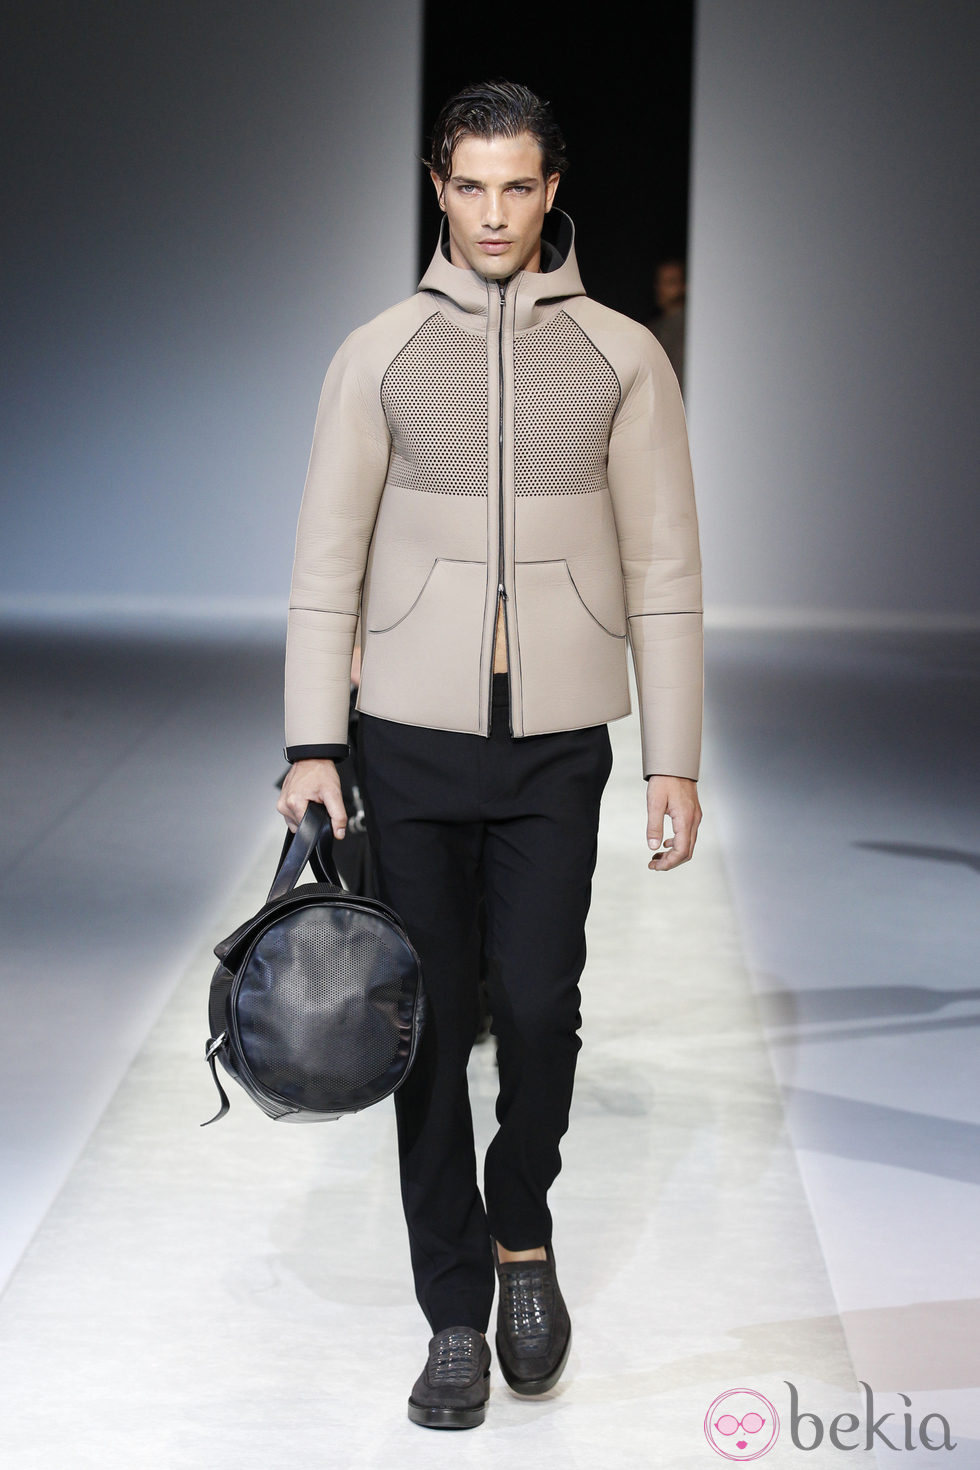 Abrigo de la colección primavera/verano 2014 de Emporio Armani en la Semana de la Moda de Milán